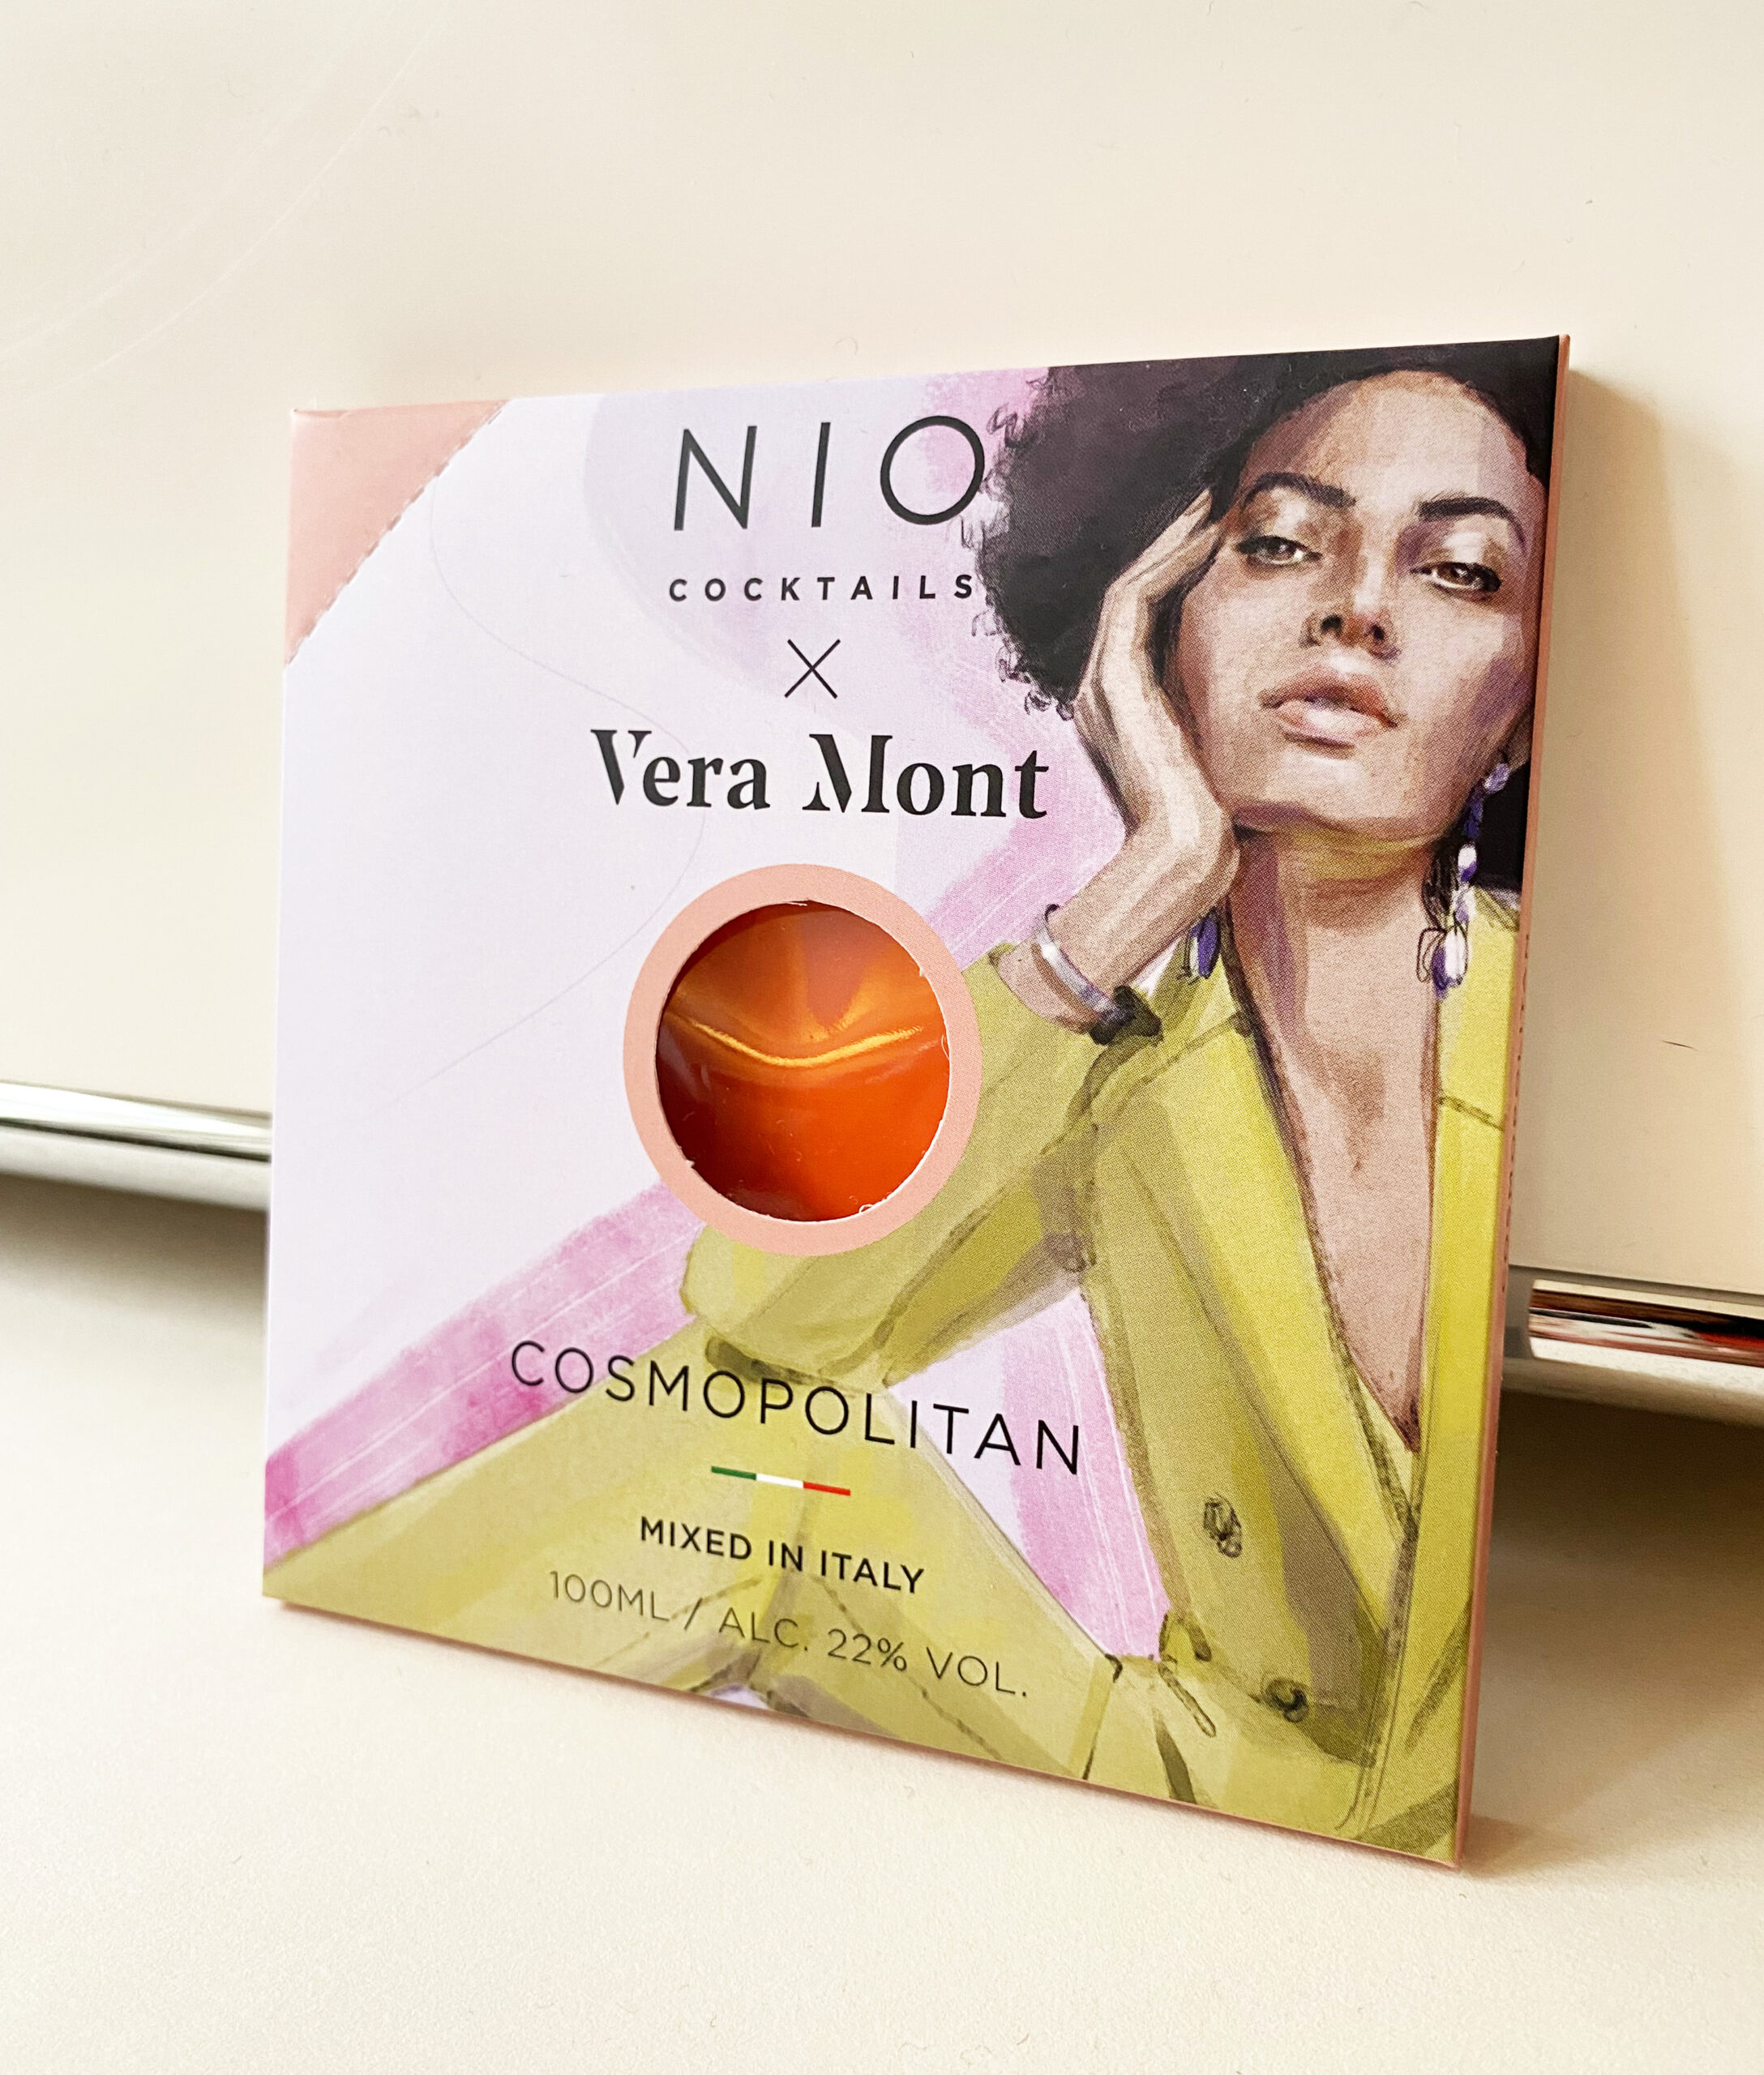 Vera Mont X Nio – Verpackungs-Design